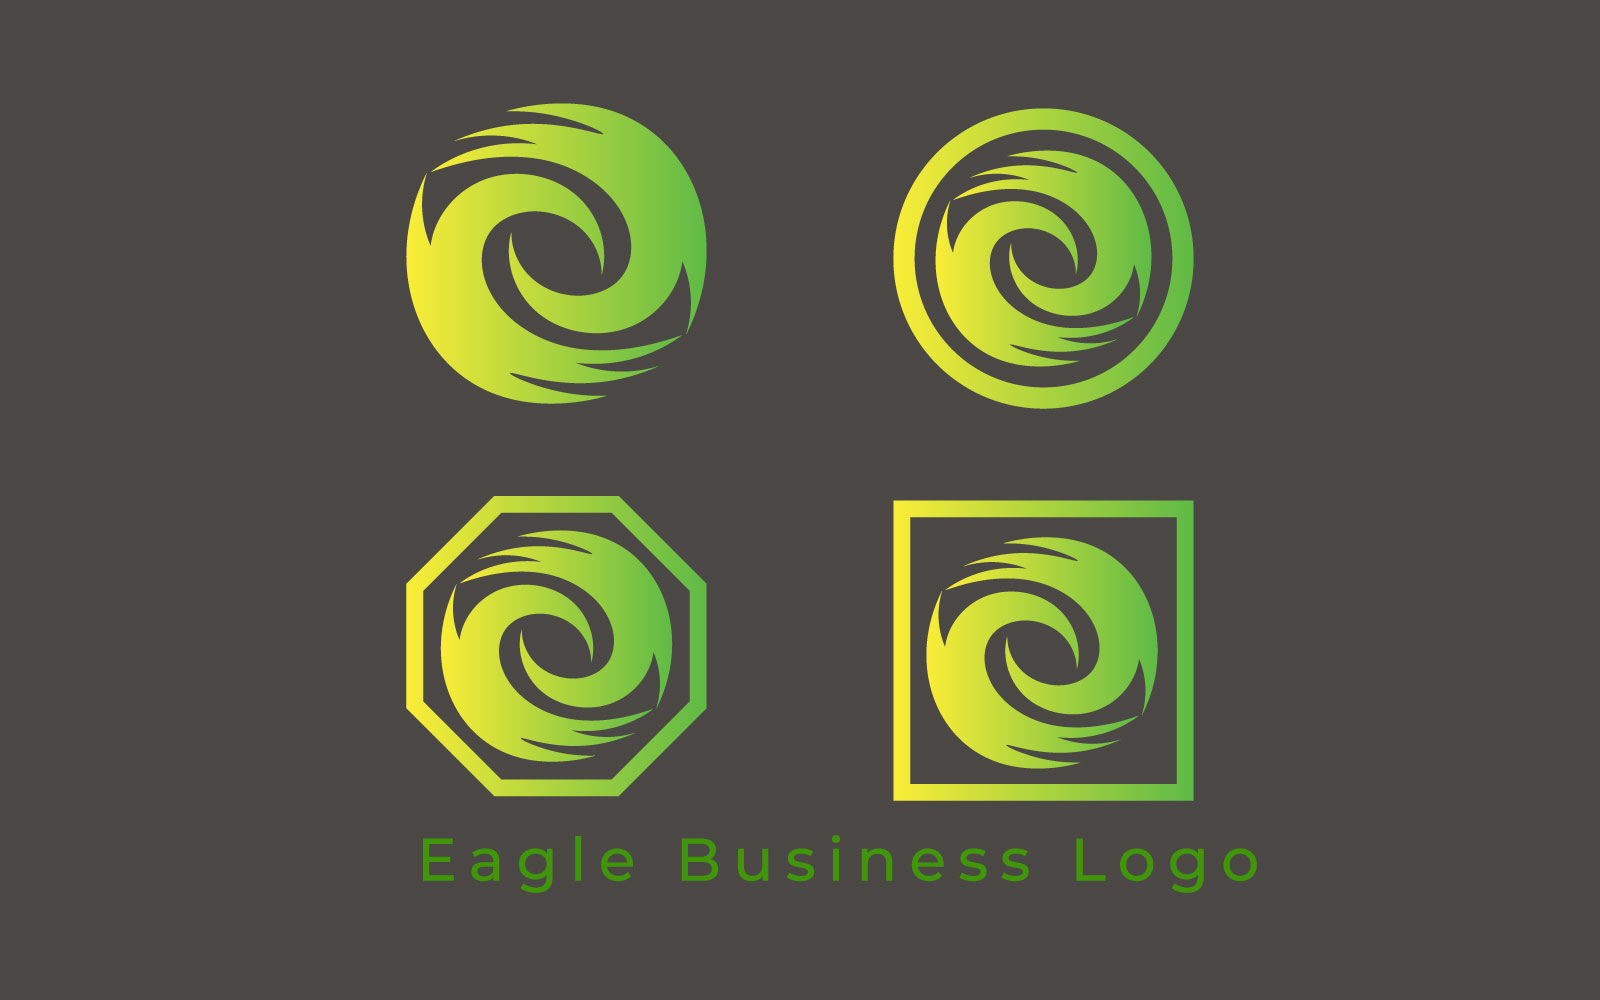 Eagle Business Logo template